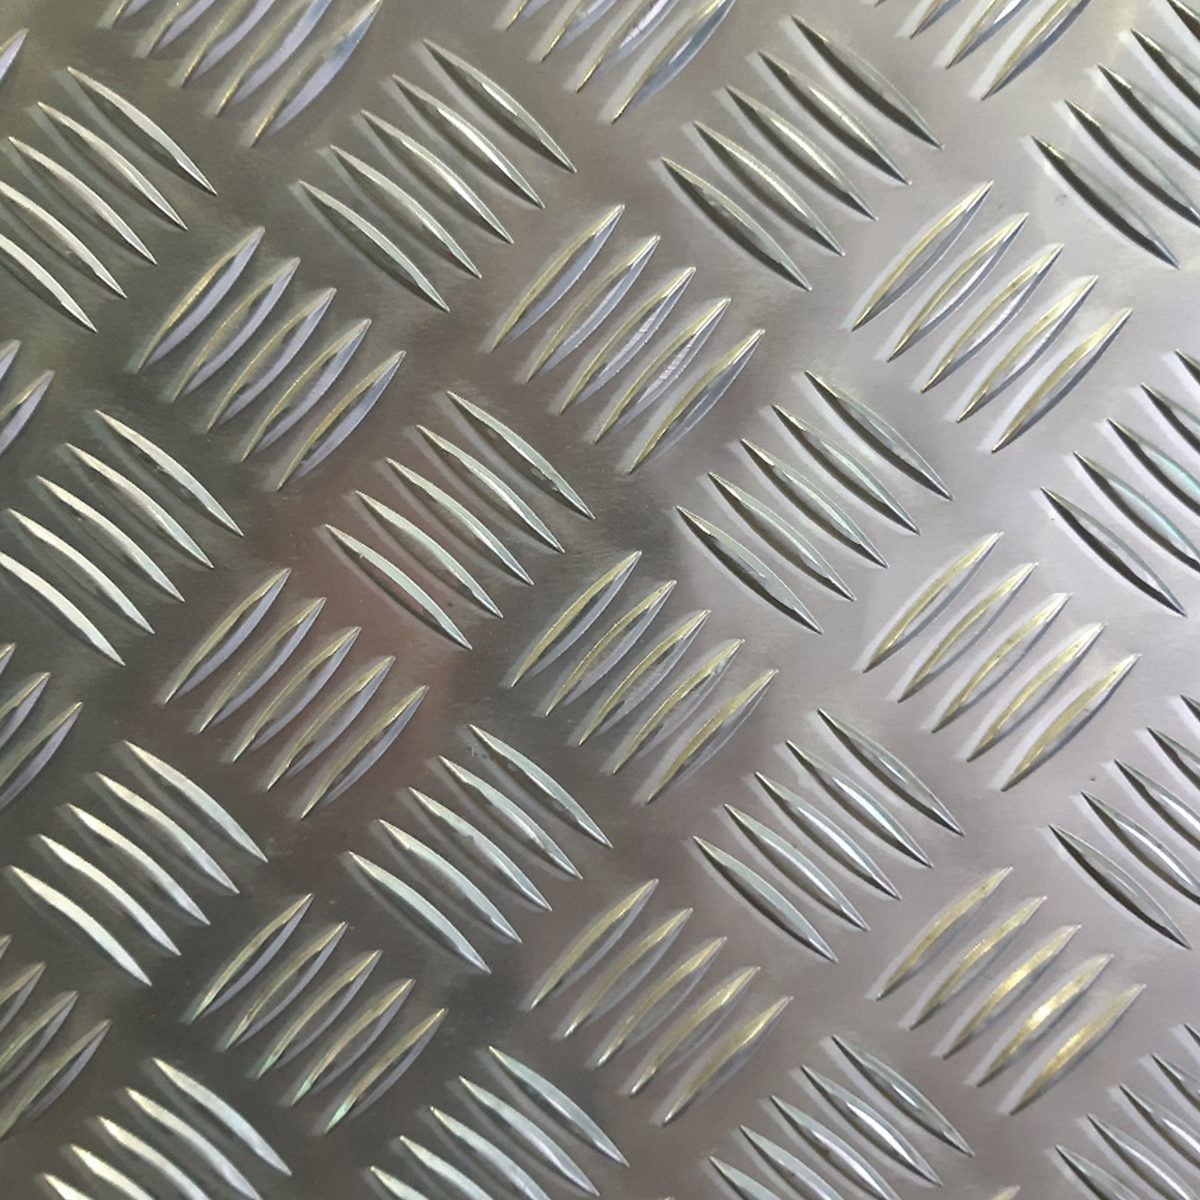 Acción especial tiras de chapa aluminio chapa agujero acero inoxidable 1,5m ajedrez hasta 50% reduzi